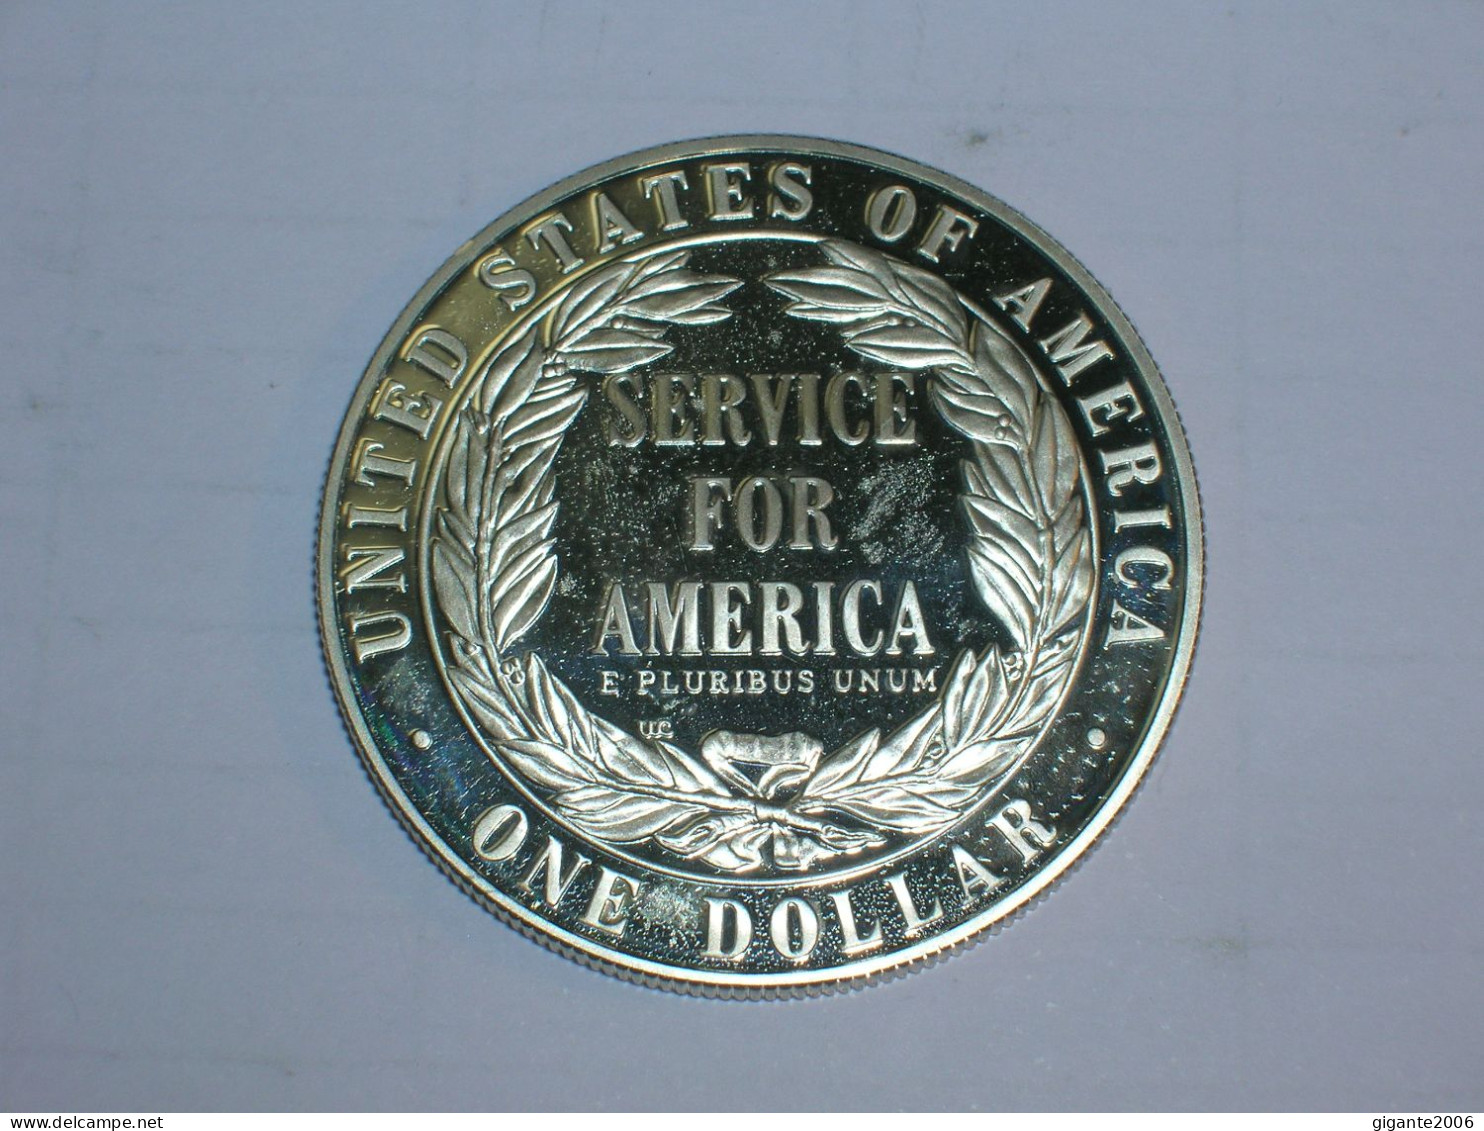 Estados Unidos/USA 1 Dolar Conmemorativo, 1996 S, Proof, National Community Service (13960) - Gedenkmünzen